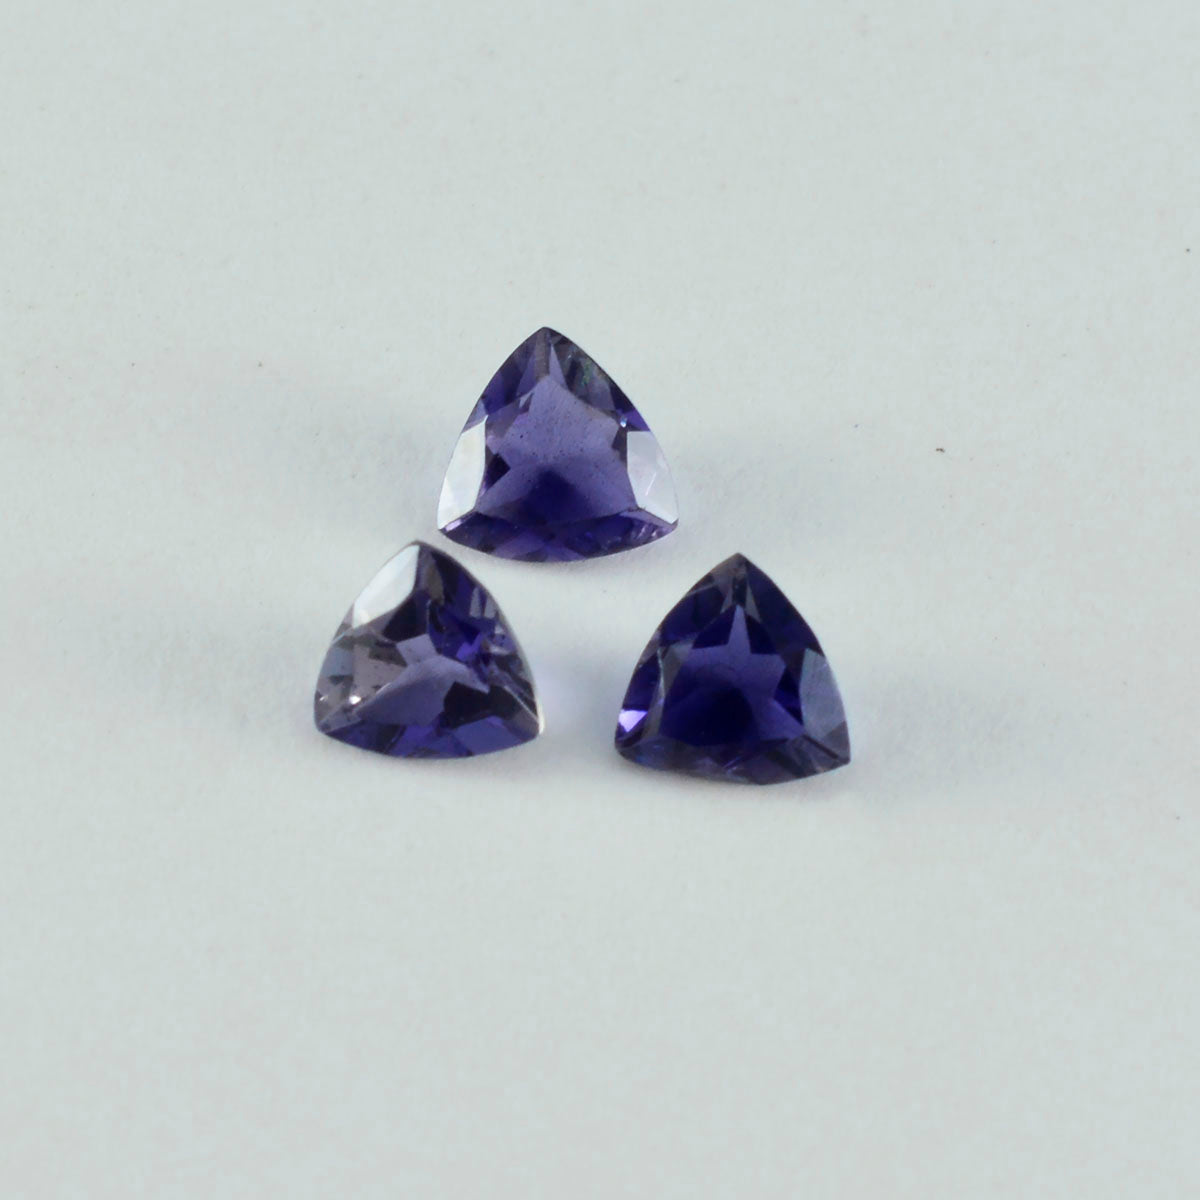 Riyogems 1 Stück blauer Iolith, facettiert, 10 x 10 mm, Billionenform, schöner Qualitätsstein